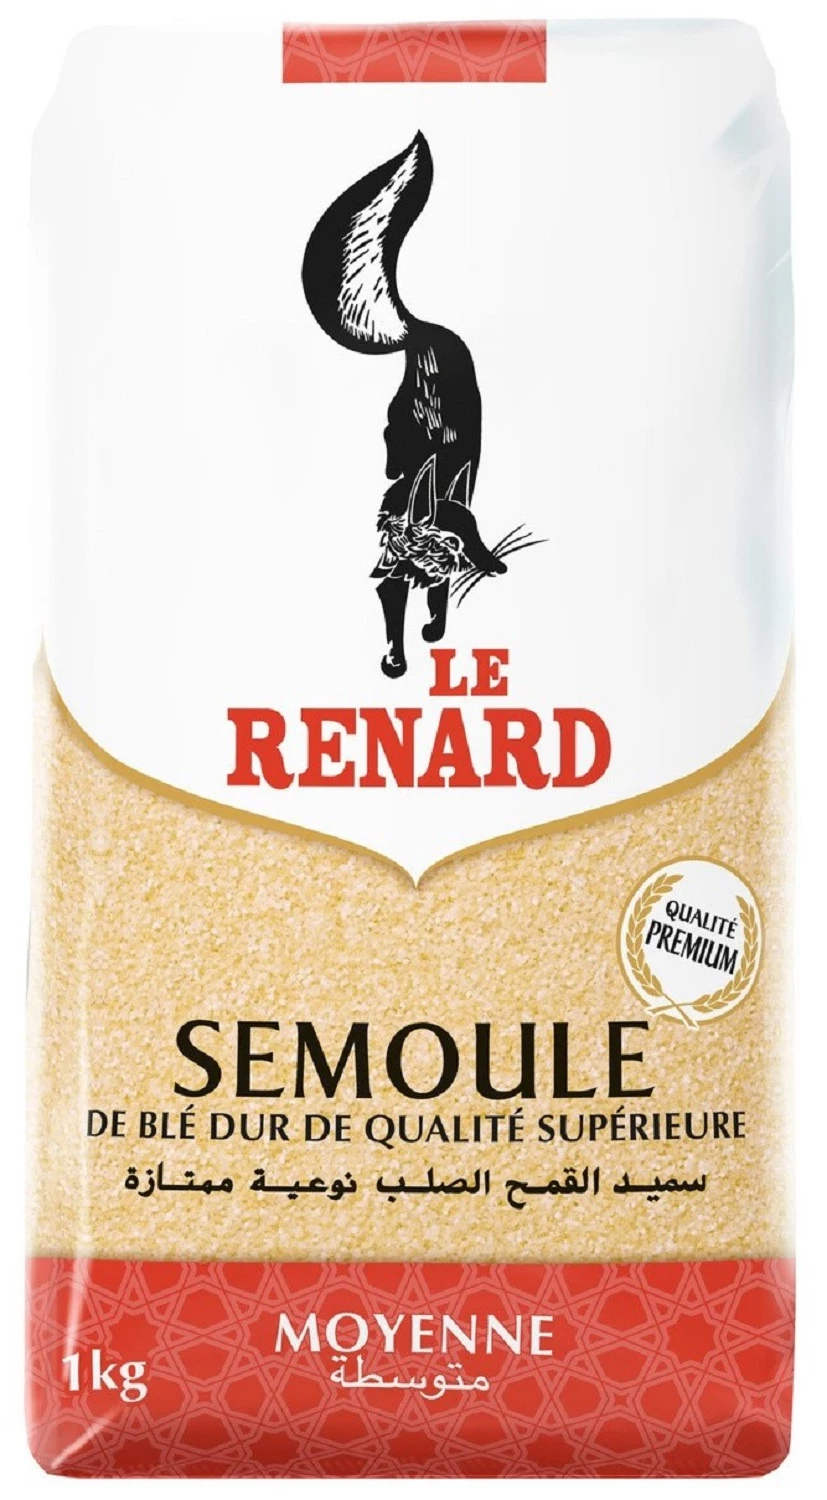 Medium wheat semolina 1kg - LE RENARD